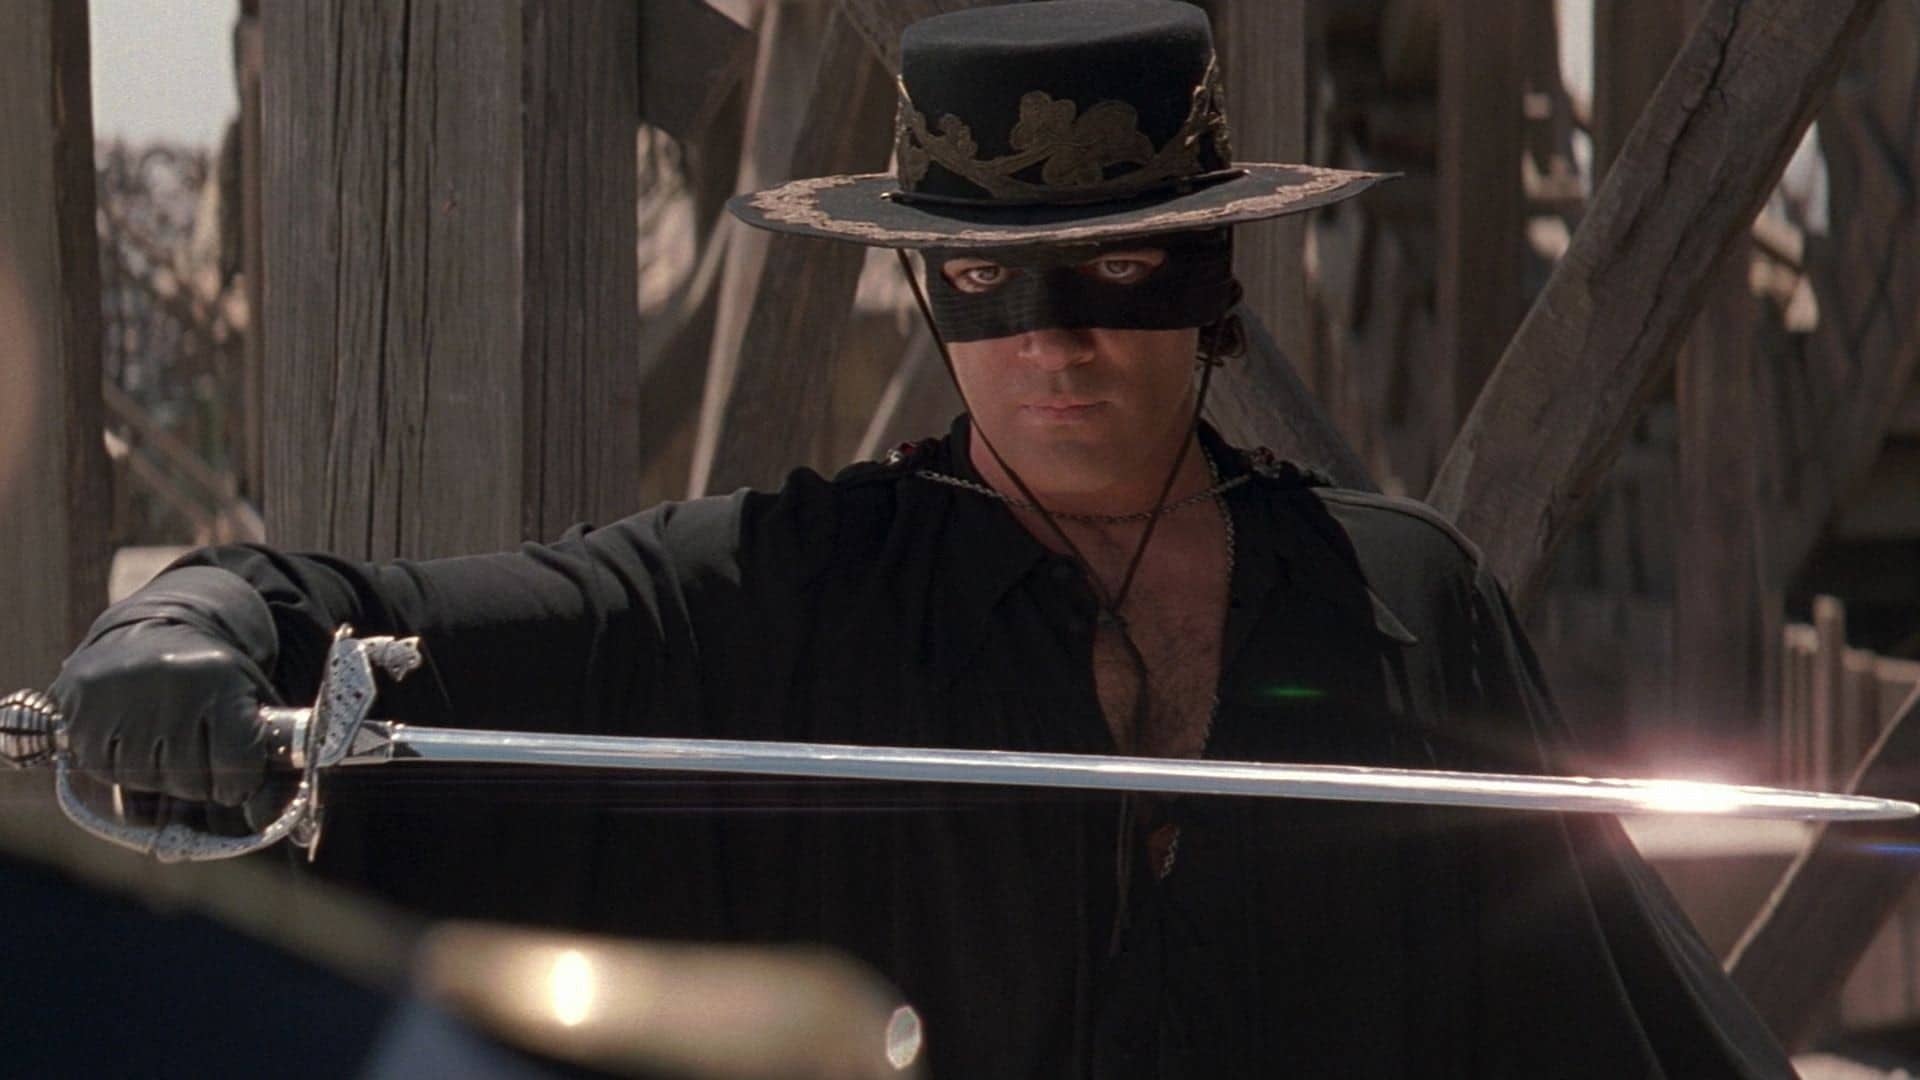 دانلود فیلم The Mask of Zorro 1998